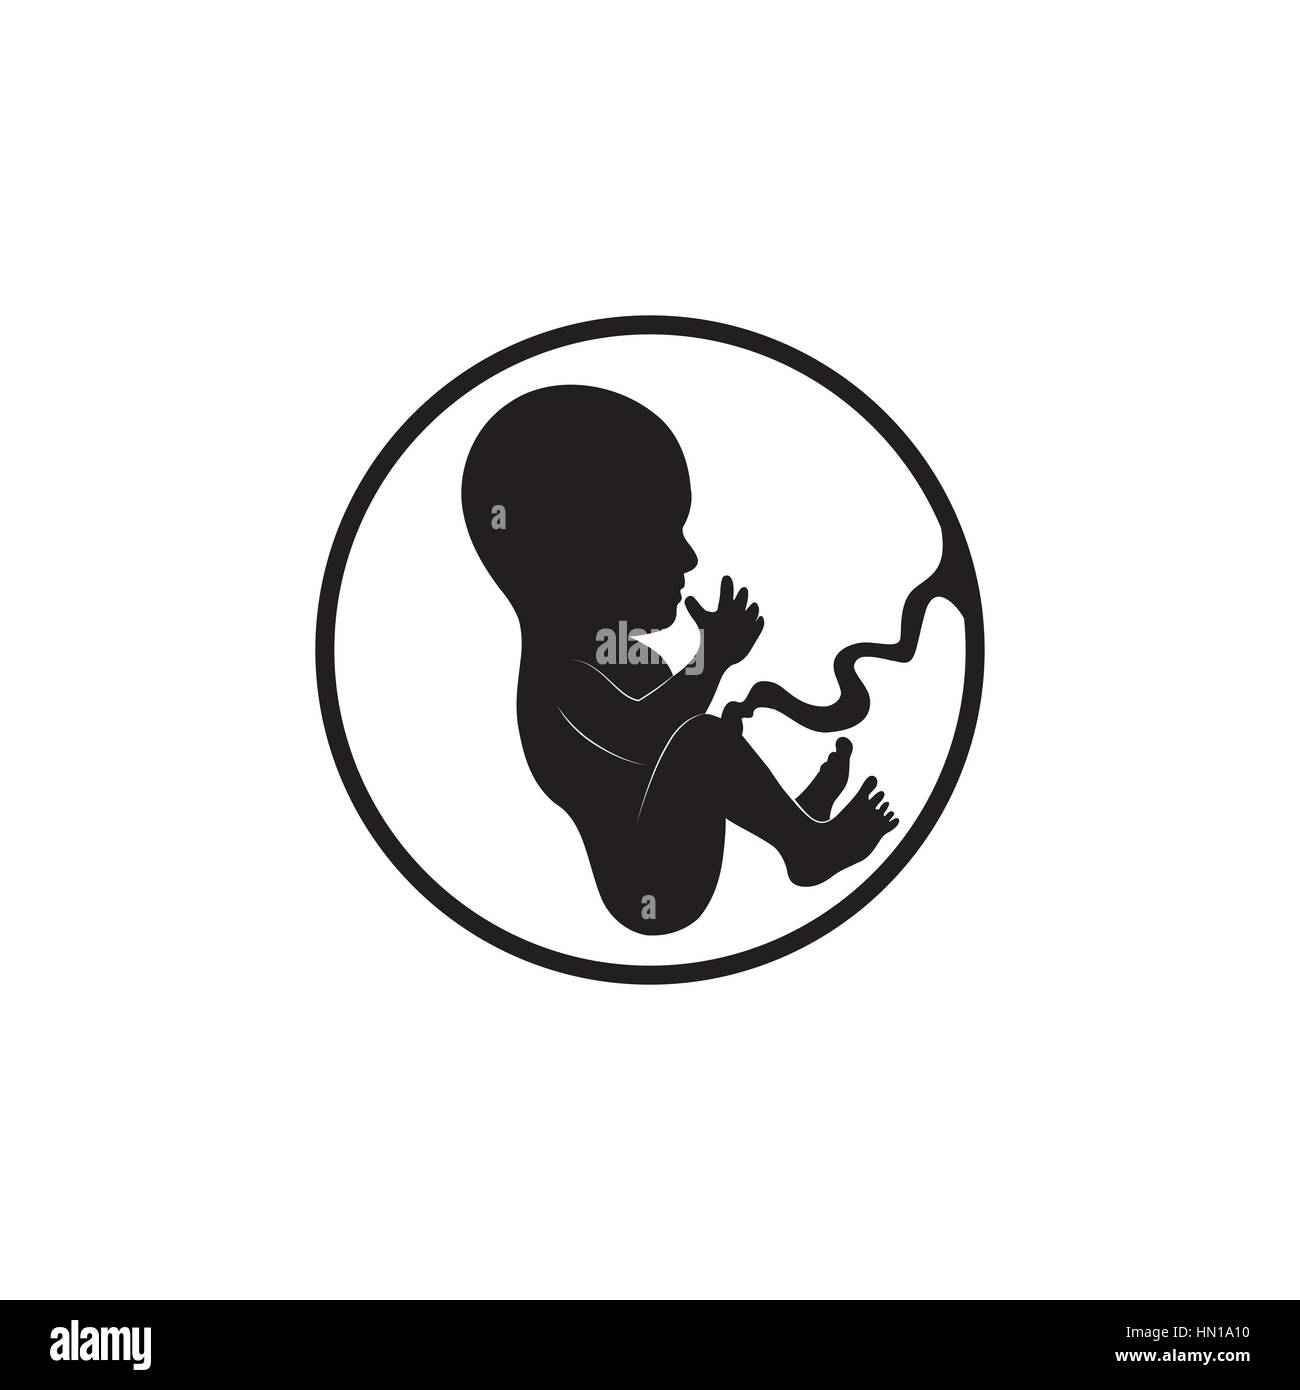 Fetus icon. Embryo sketch illustration Stock Vector